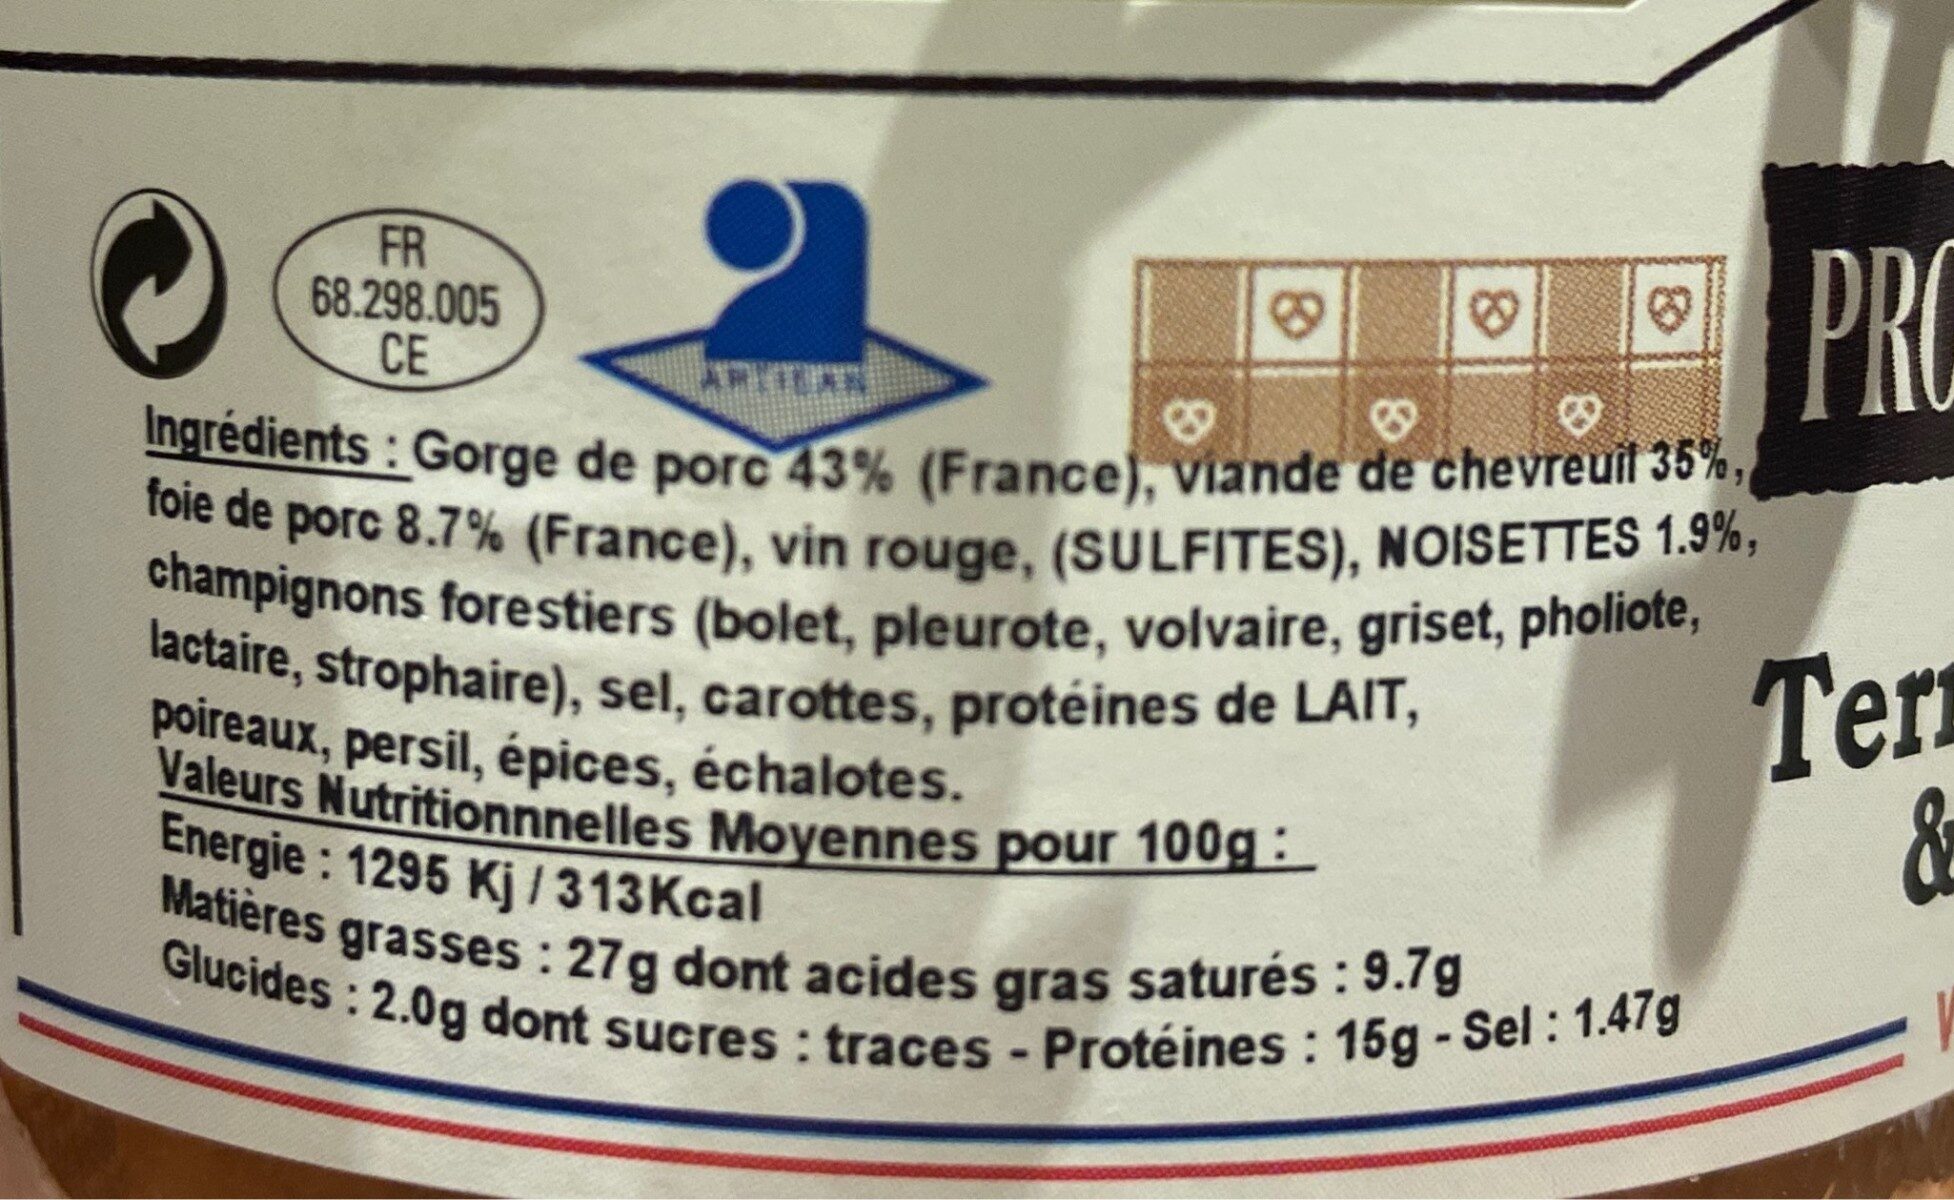 Terrine au chevreuil et aux noisettes - Nutrition facts - fr